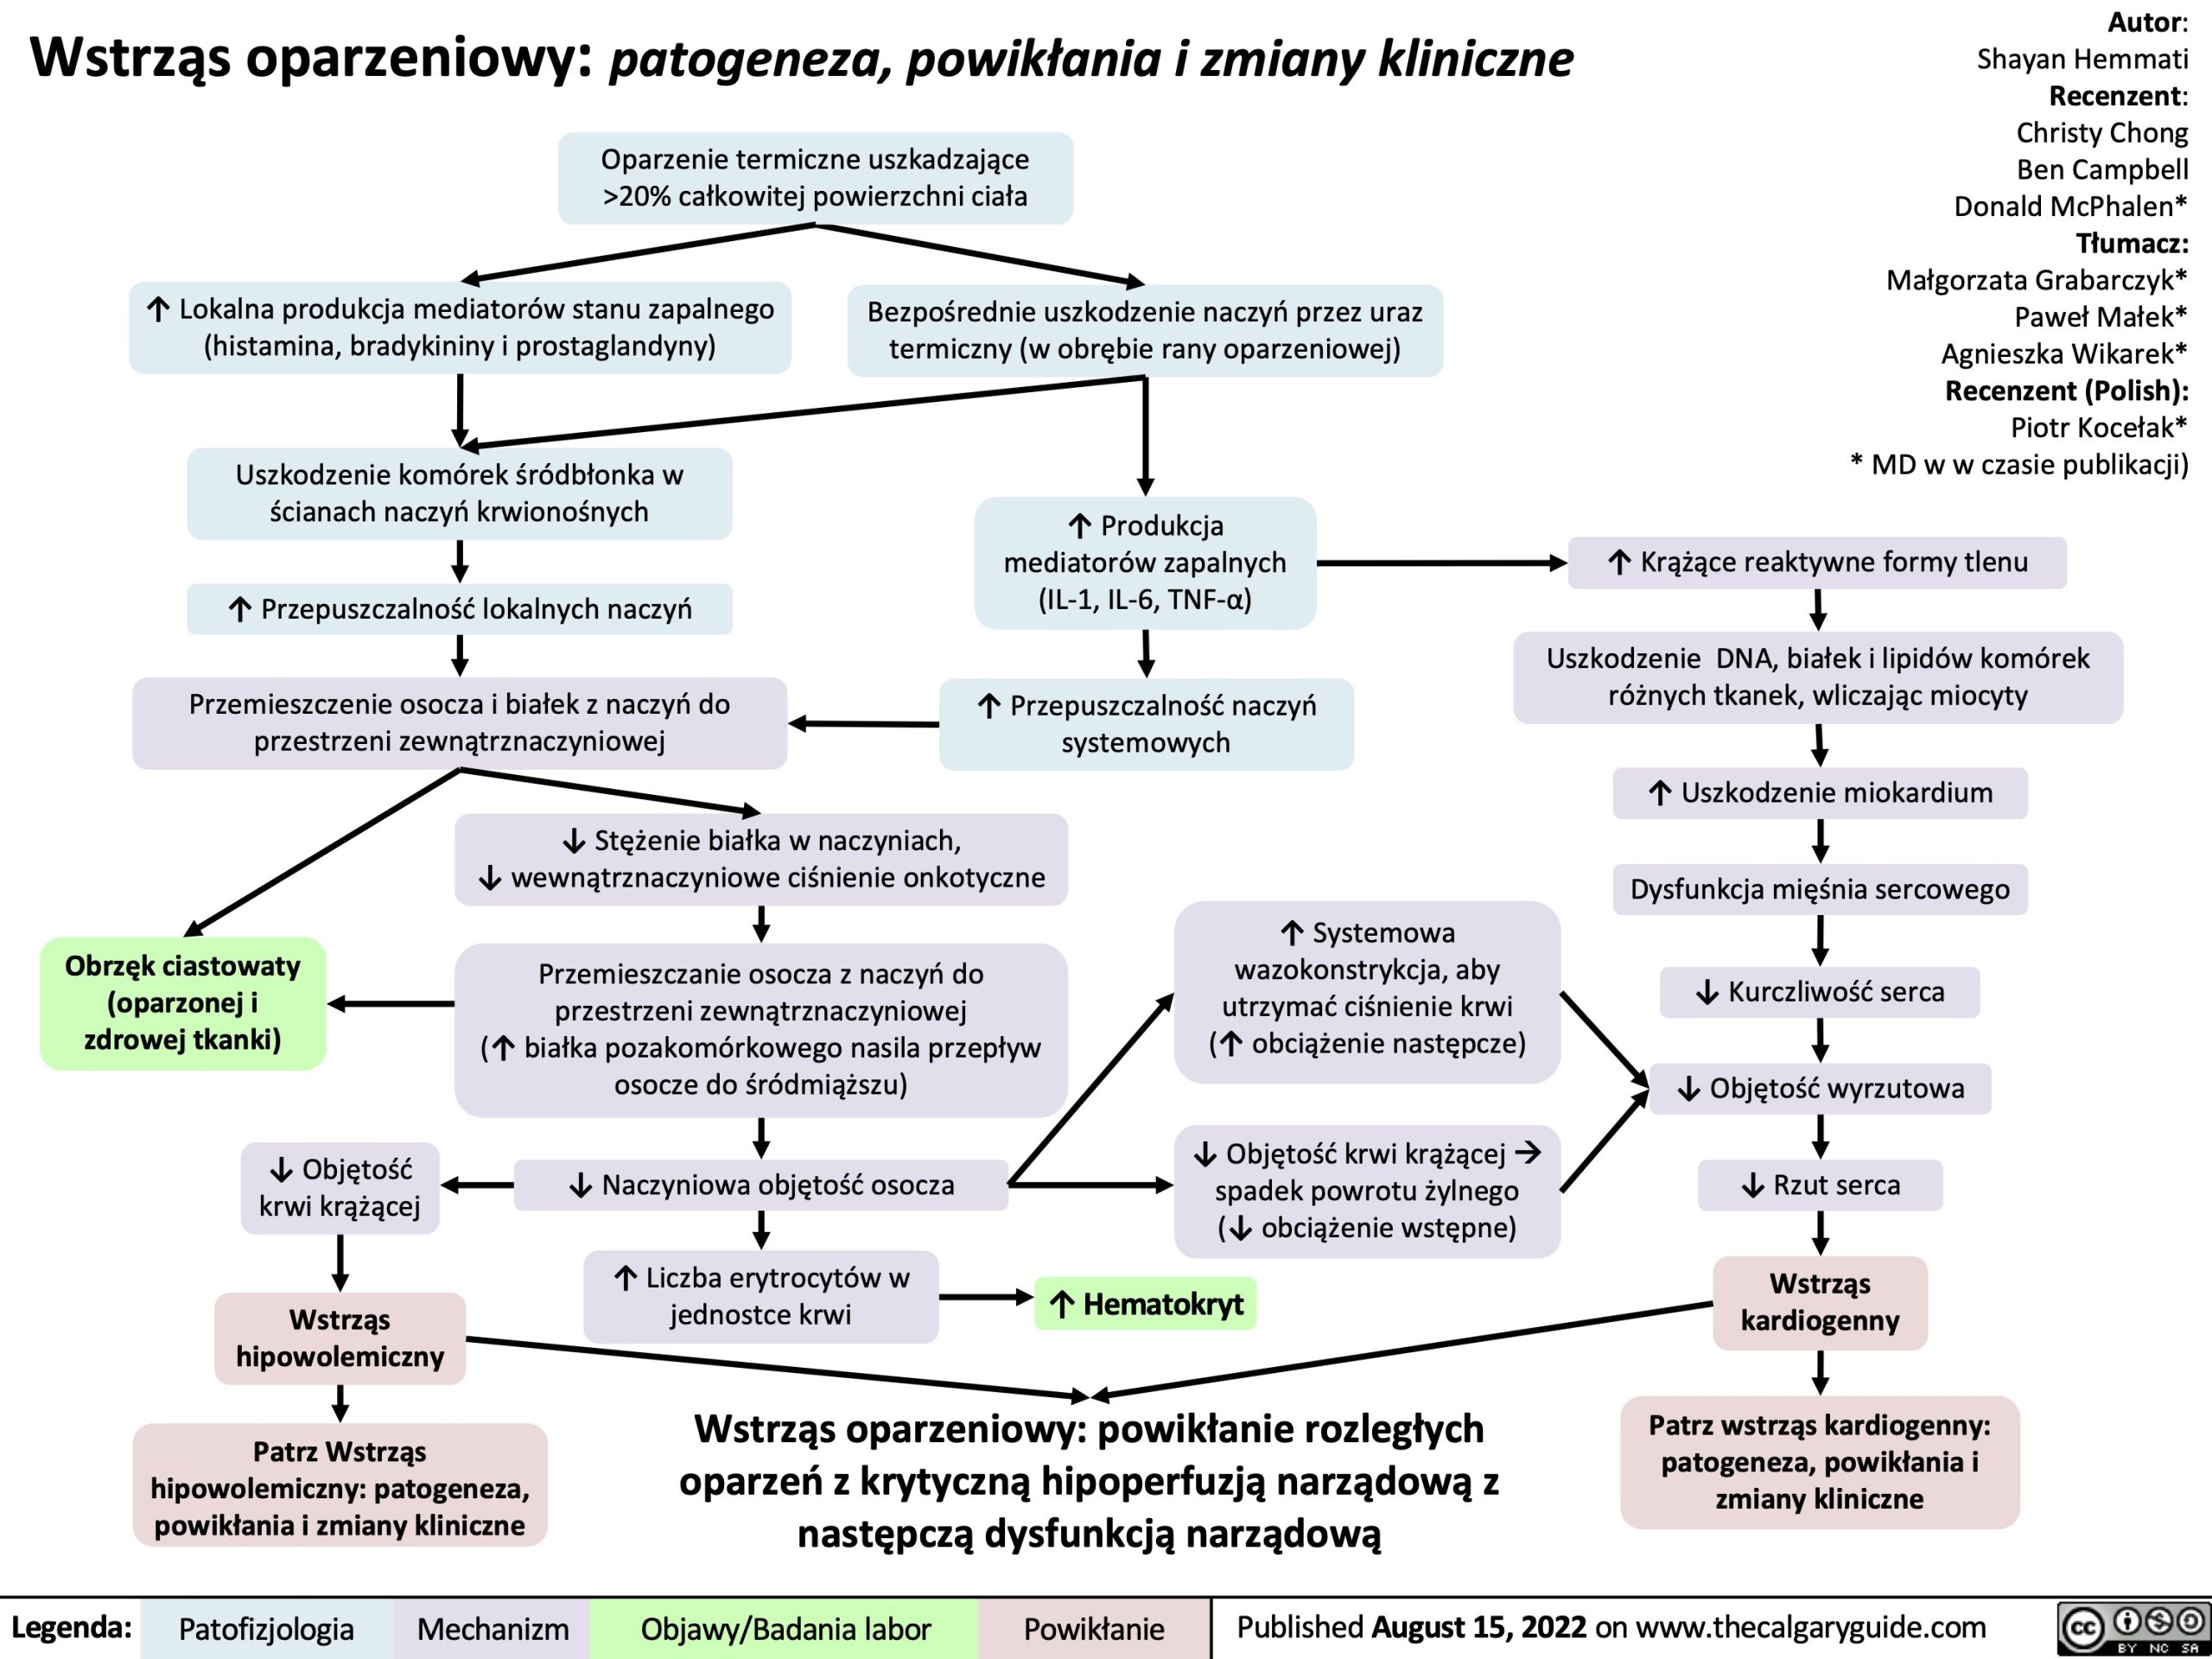 Wstrząs oparzeniowy: patogeneza, powikłania i zmiany kliniczne